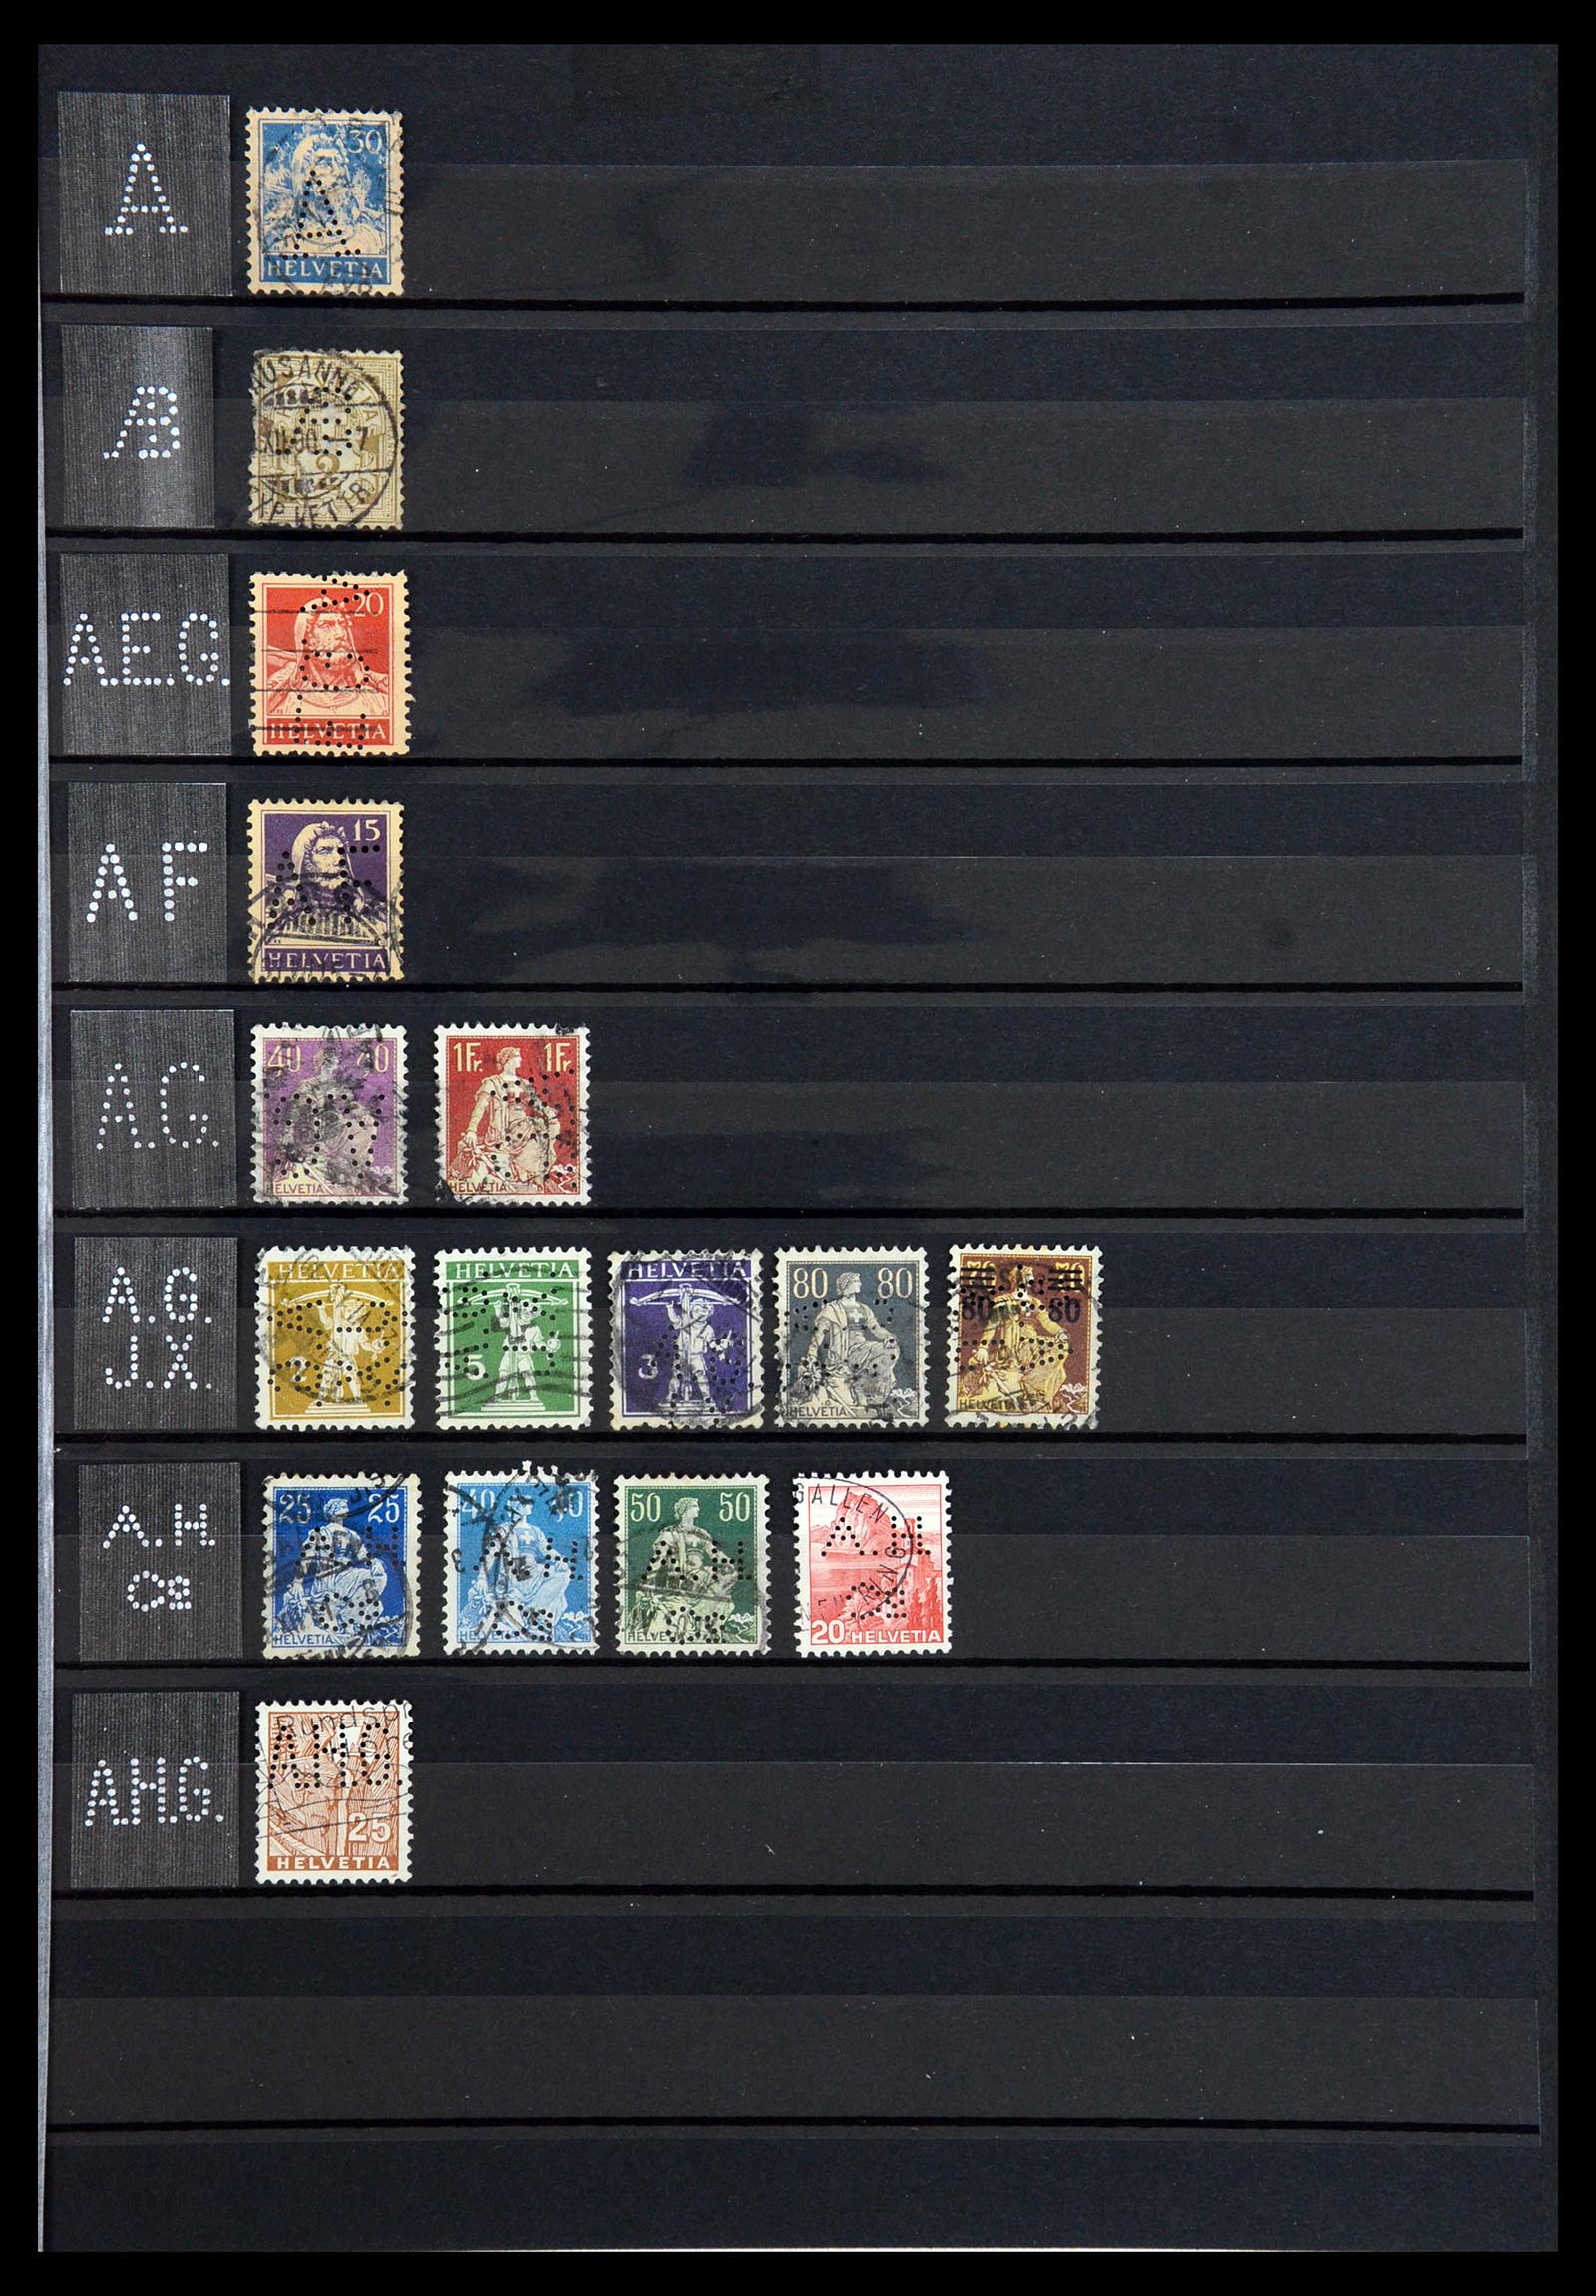 36372 001 - Stamp collection 36372 Switzerland perfins 1880-1960.